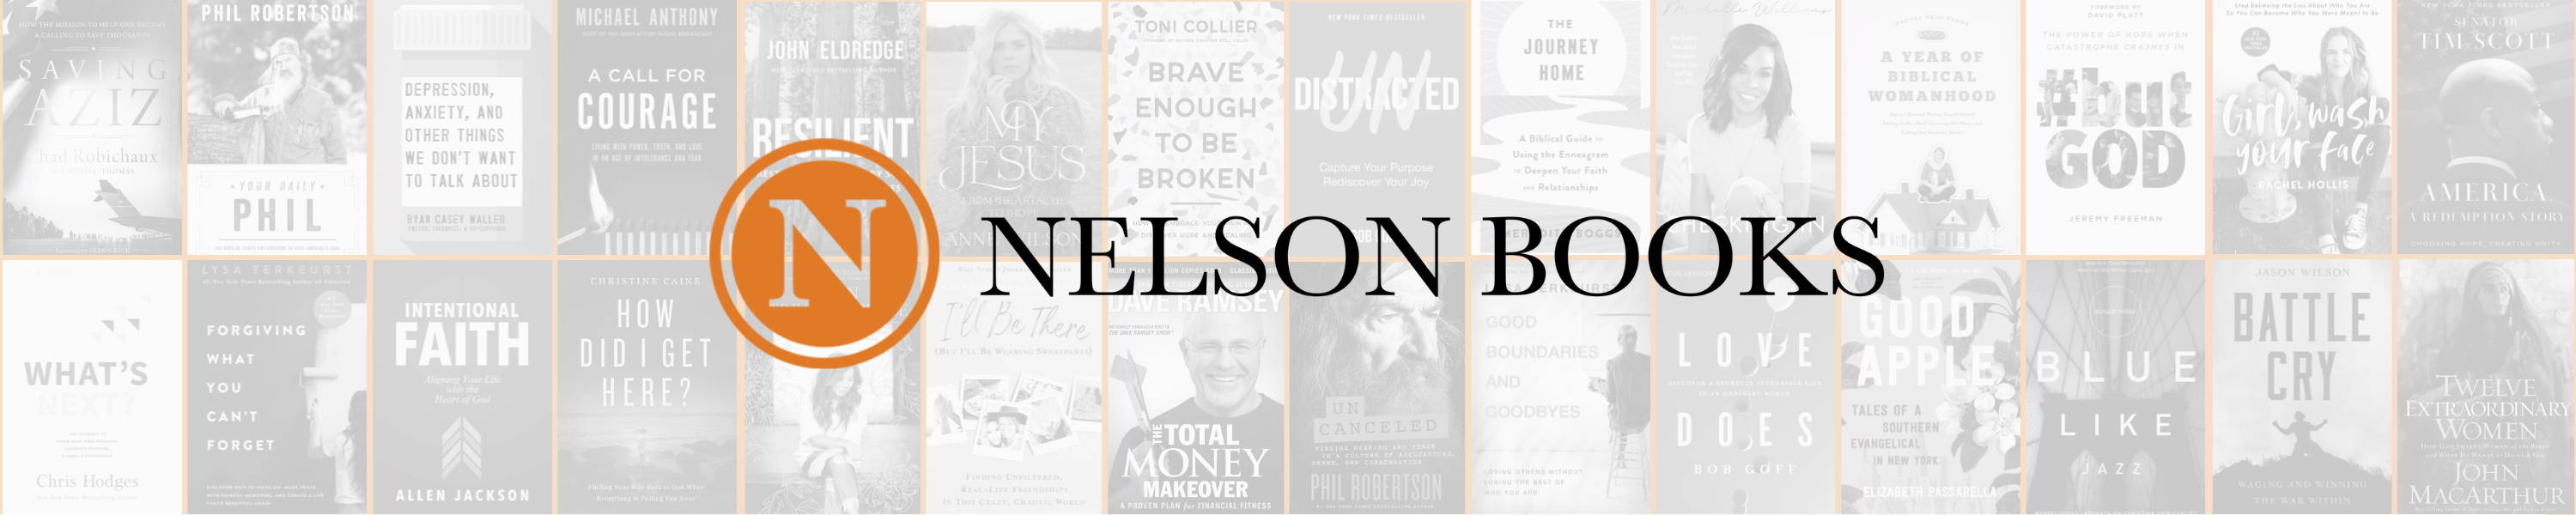 Nelson Books - Mental Health